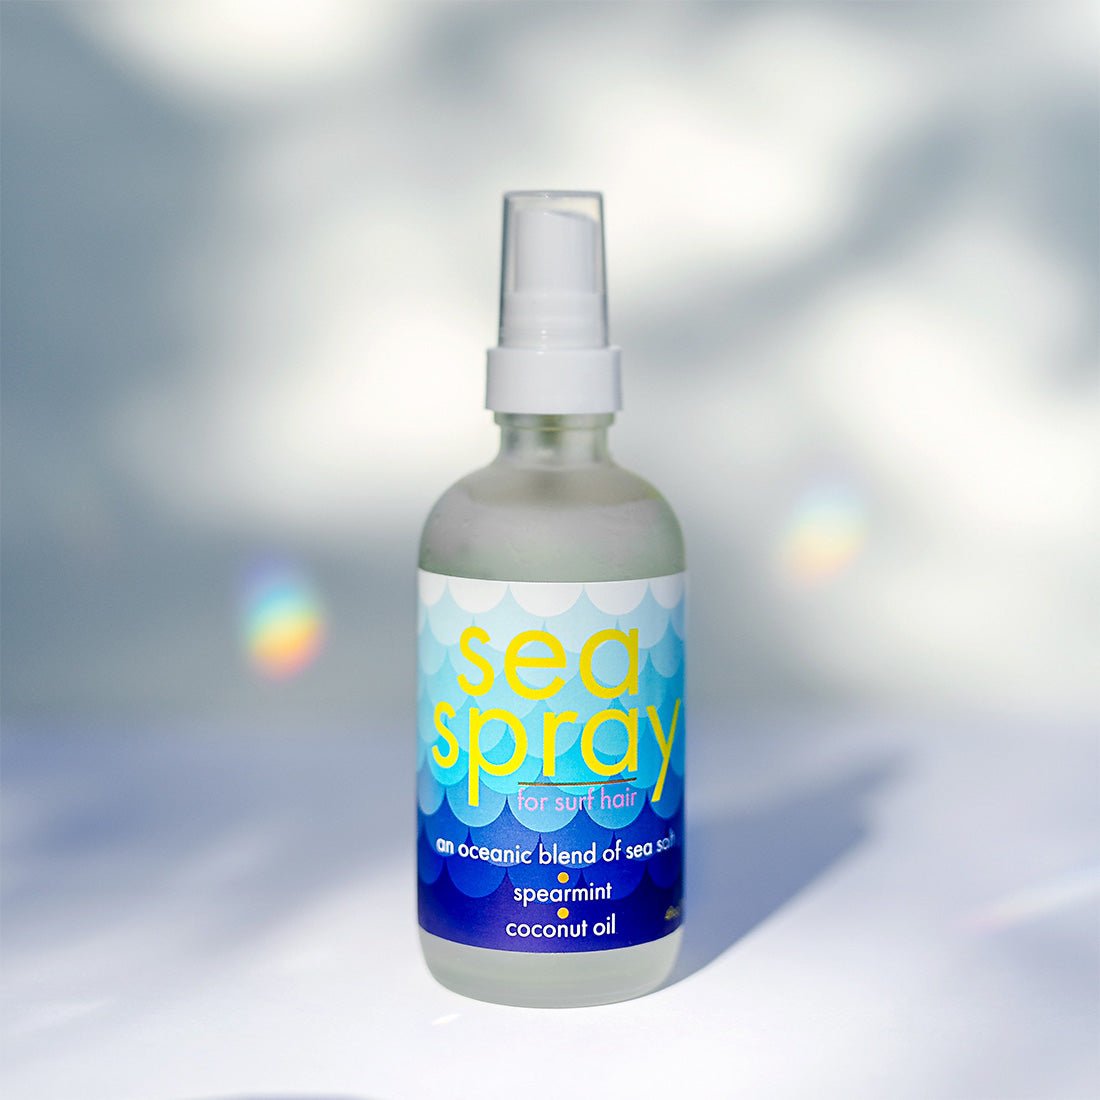 Surf Spray – Nelson j Hair Care